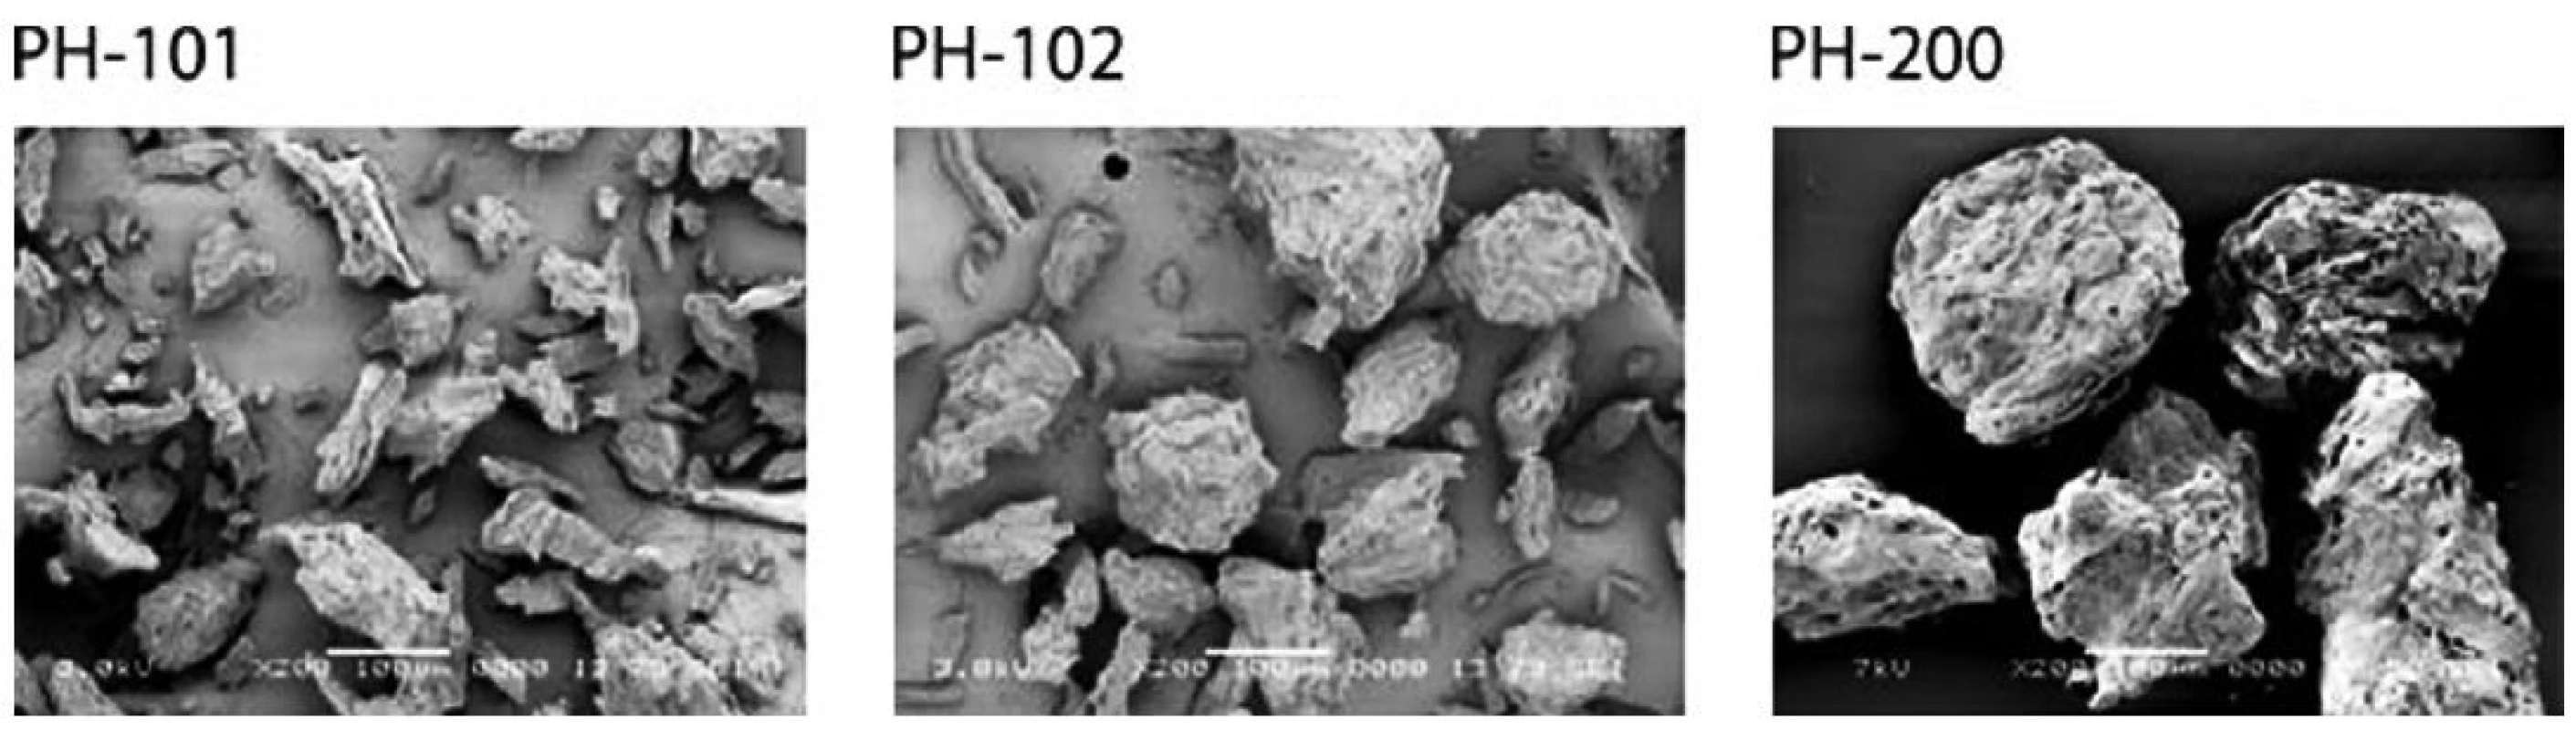 Mikroskopický snímek tří typů mikrokrystalické celulosy&lt;sup&gt;77)&lt;/sup&gt;